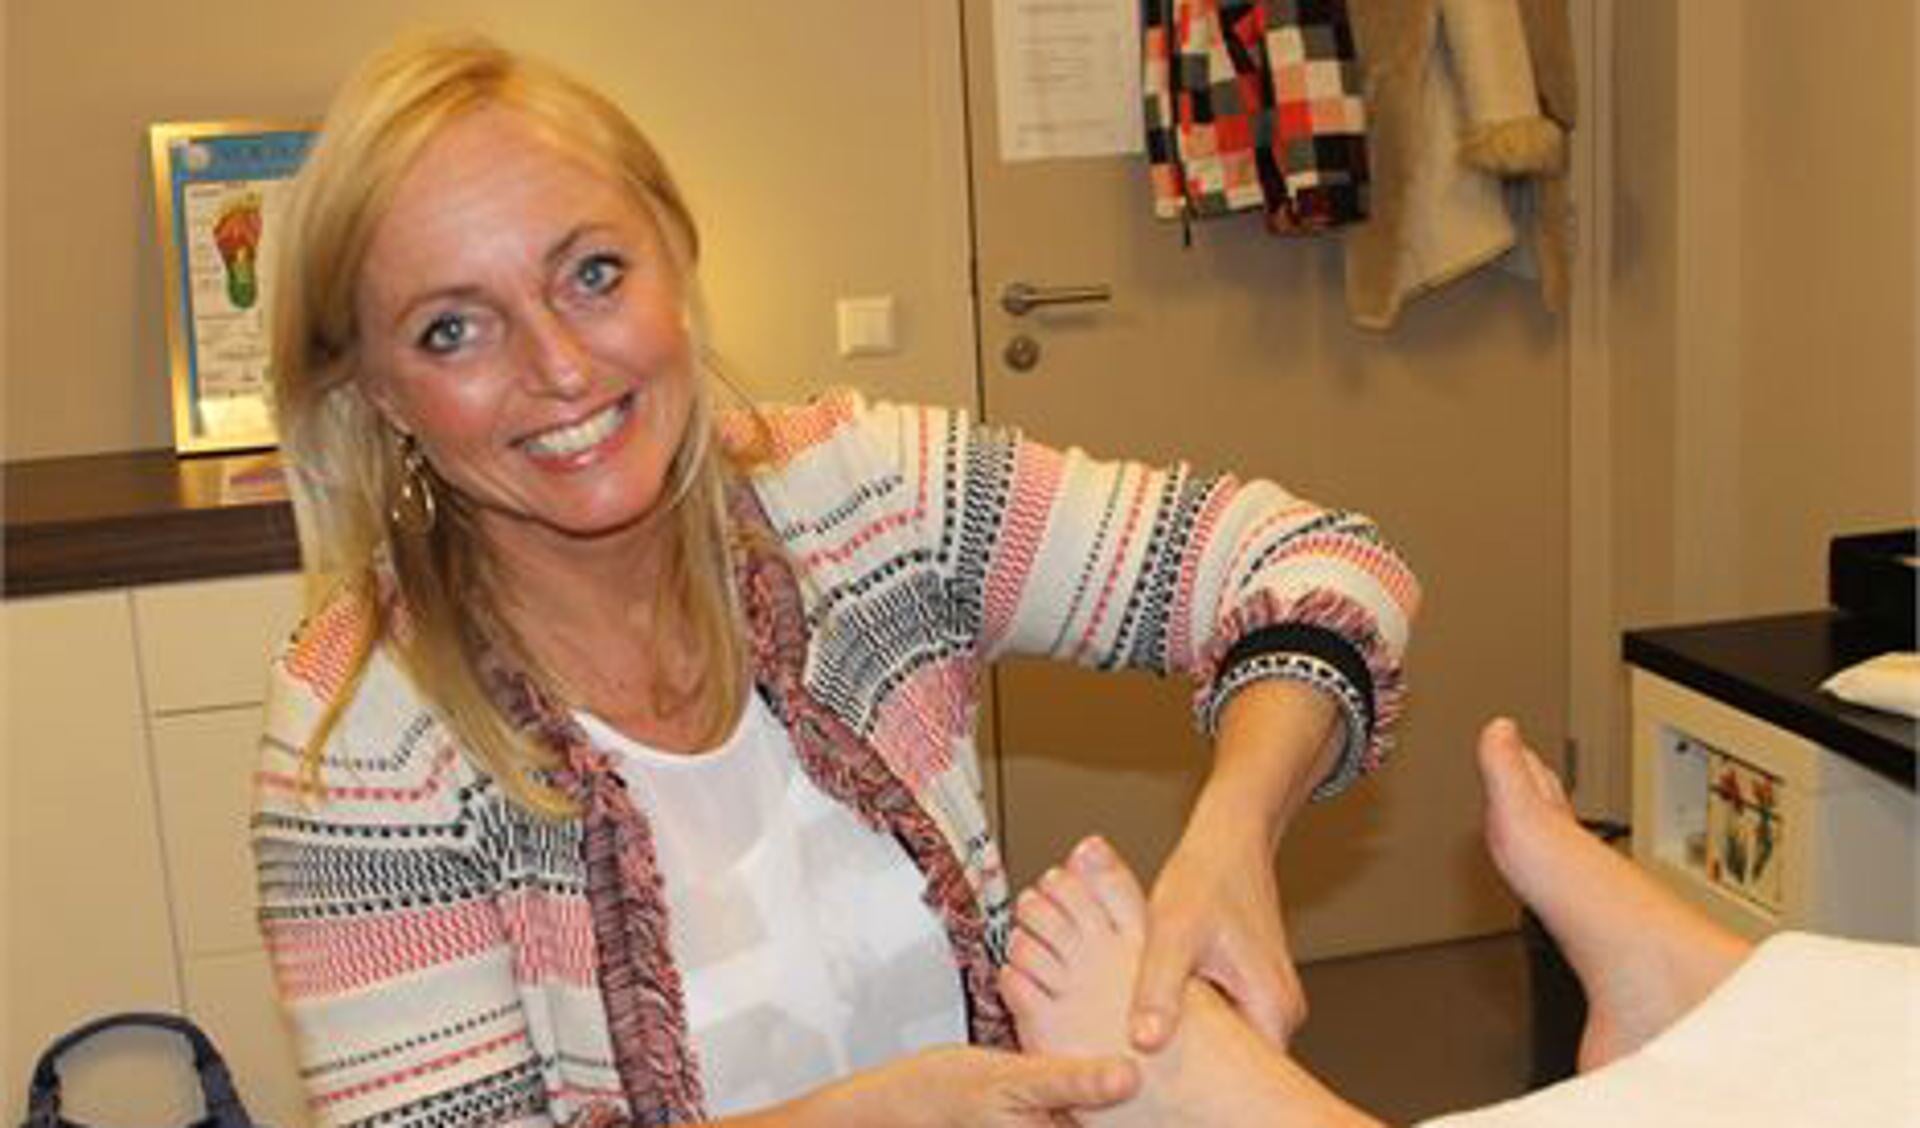 “Door massage op de hele voet ontspant het lichaam”, vertelt Saskia Klawer tijdens een behandeling aan de voet. (foto: Het Krantje)